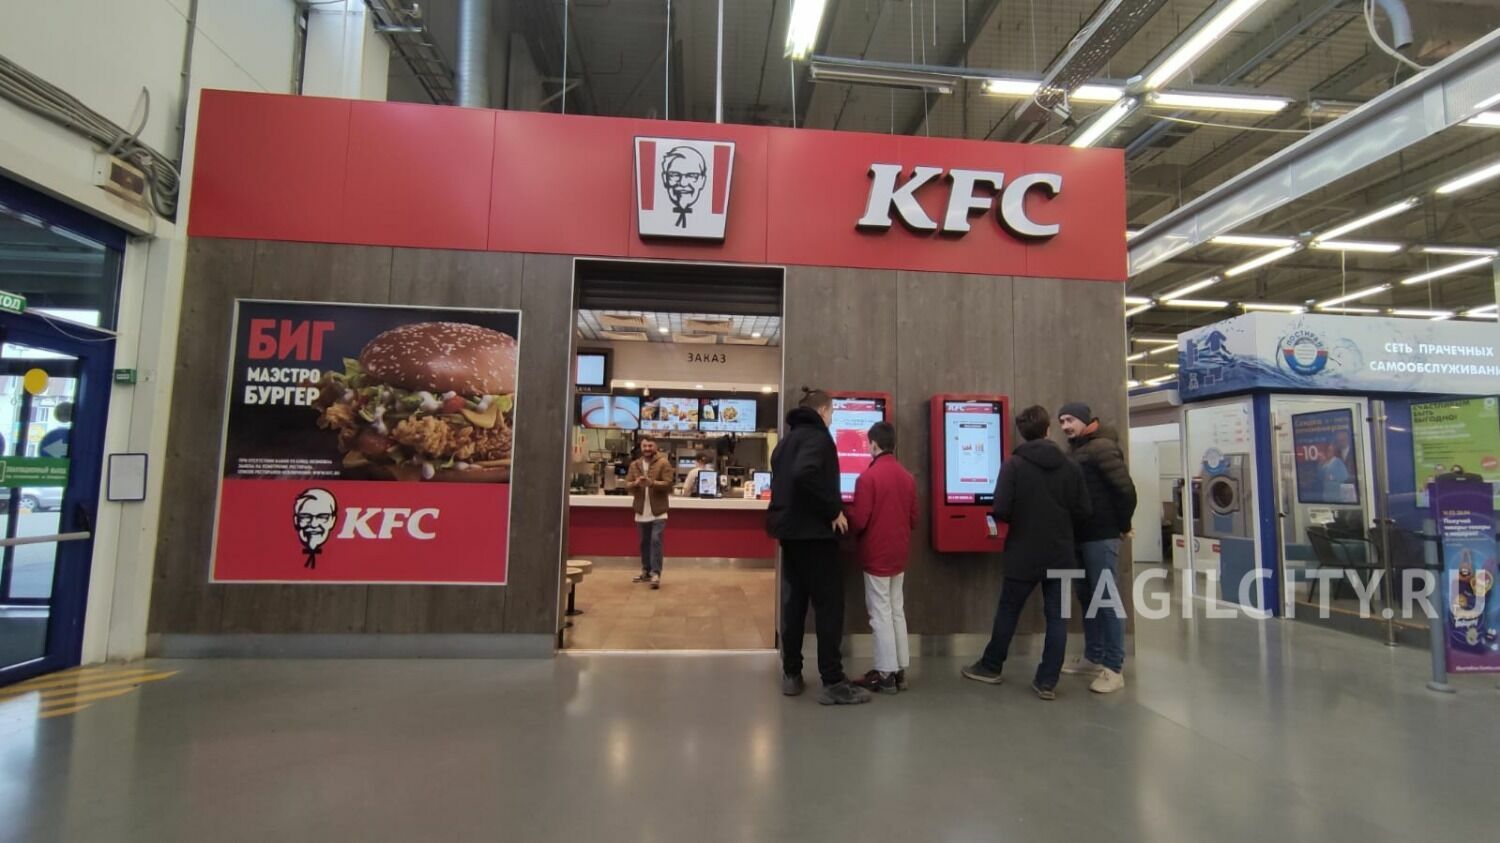 В Нижнем Тагиле переименуют бренд KFC